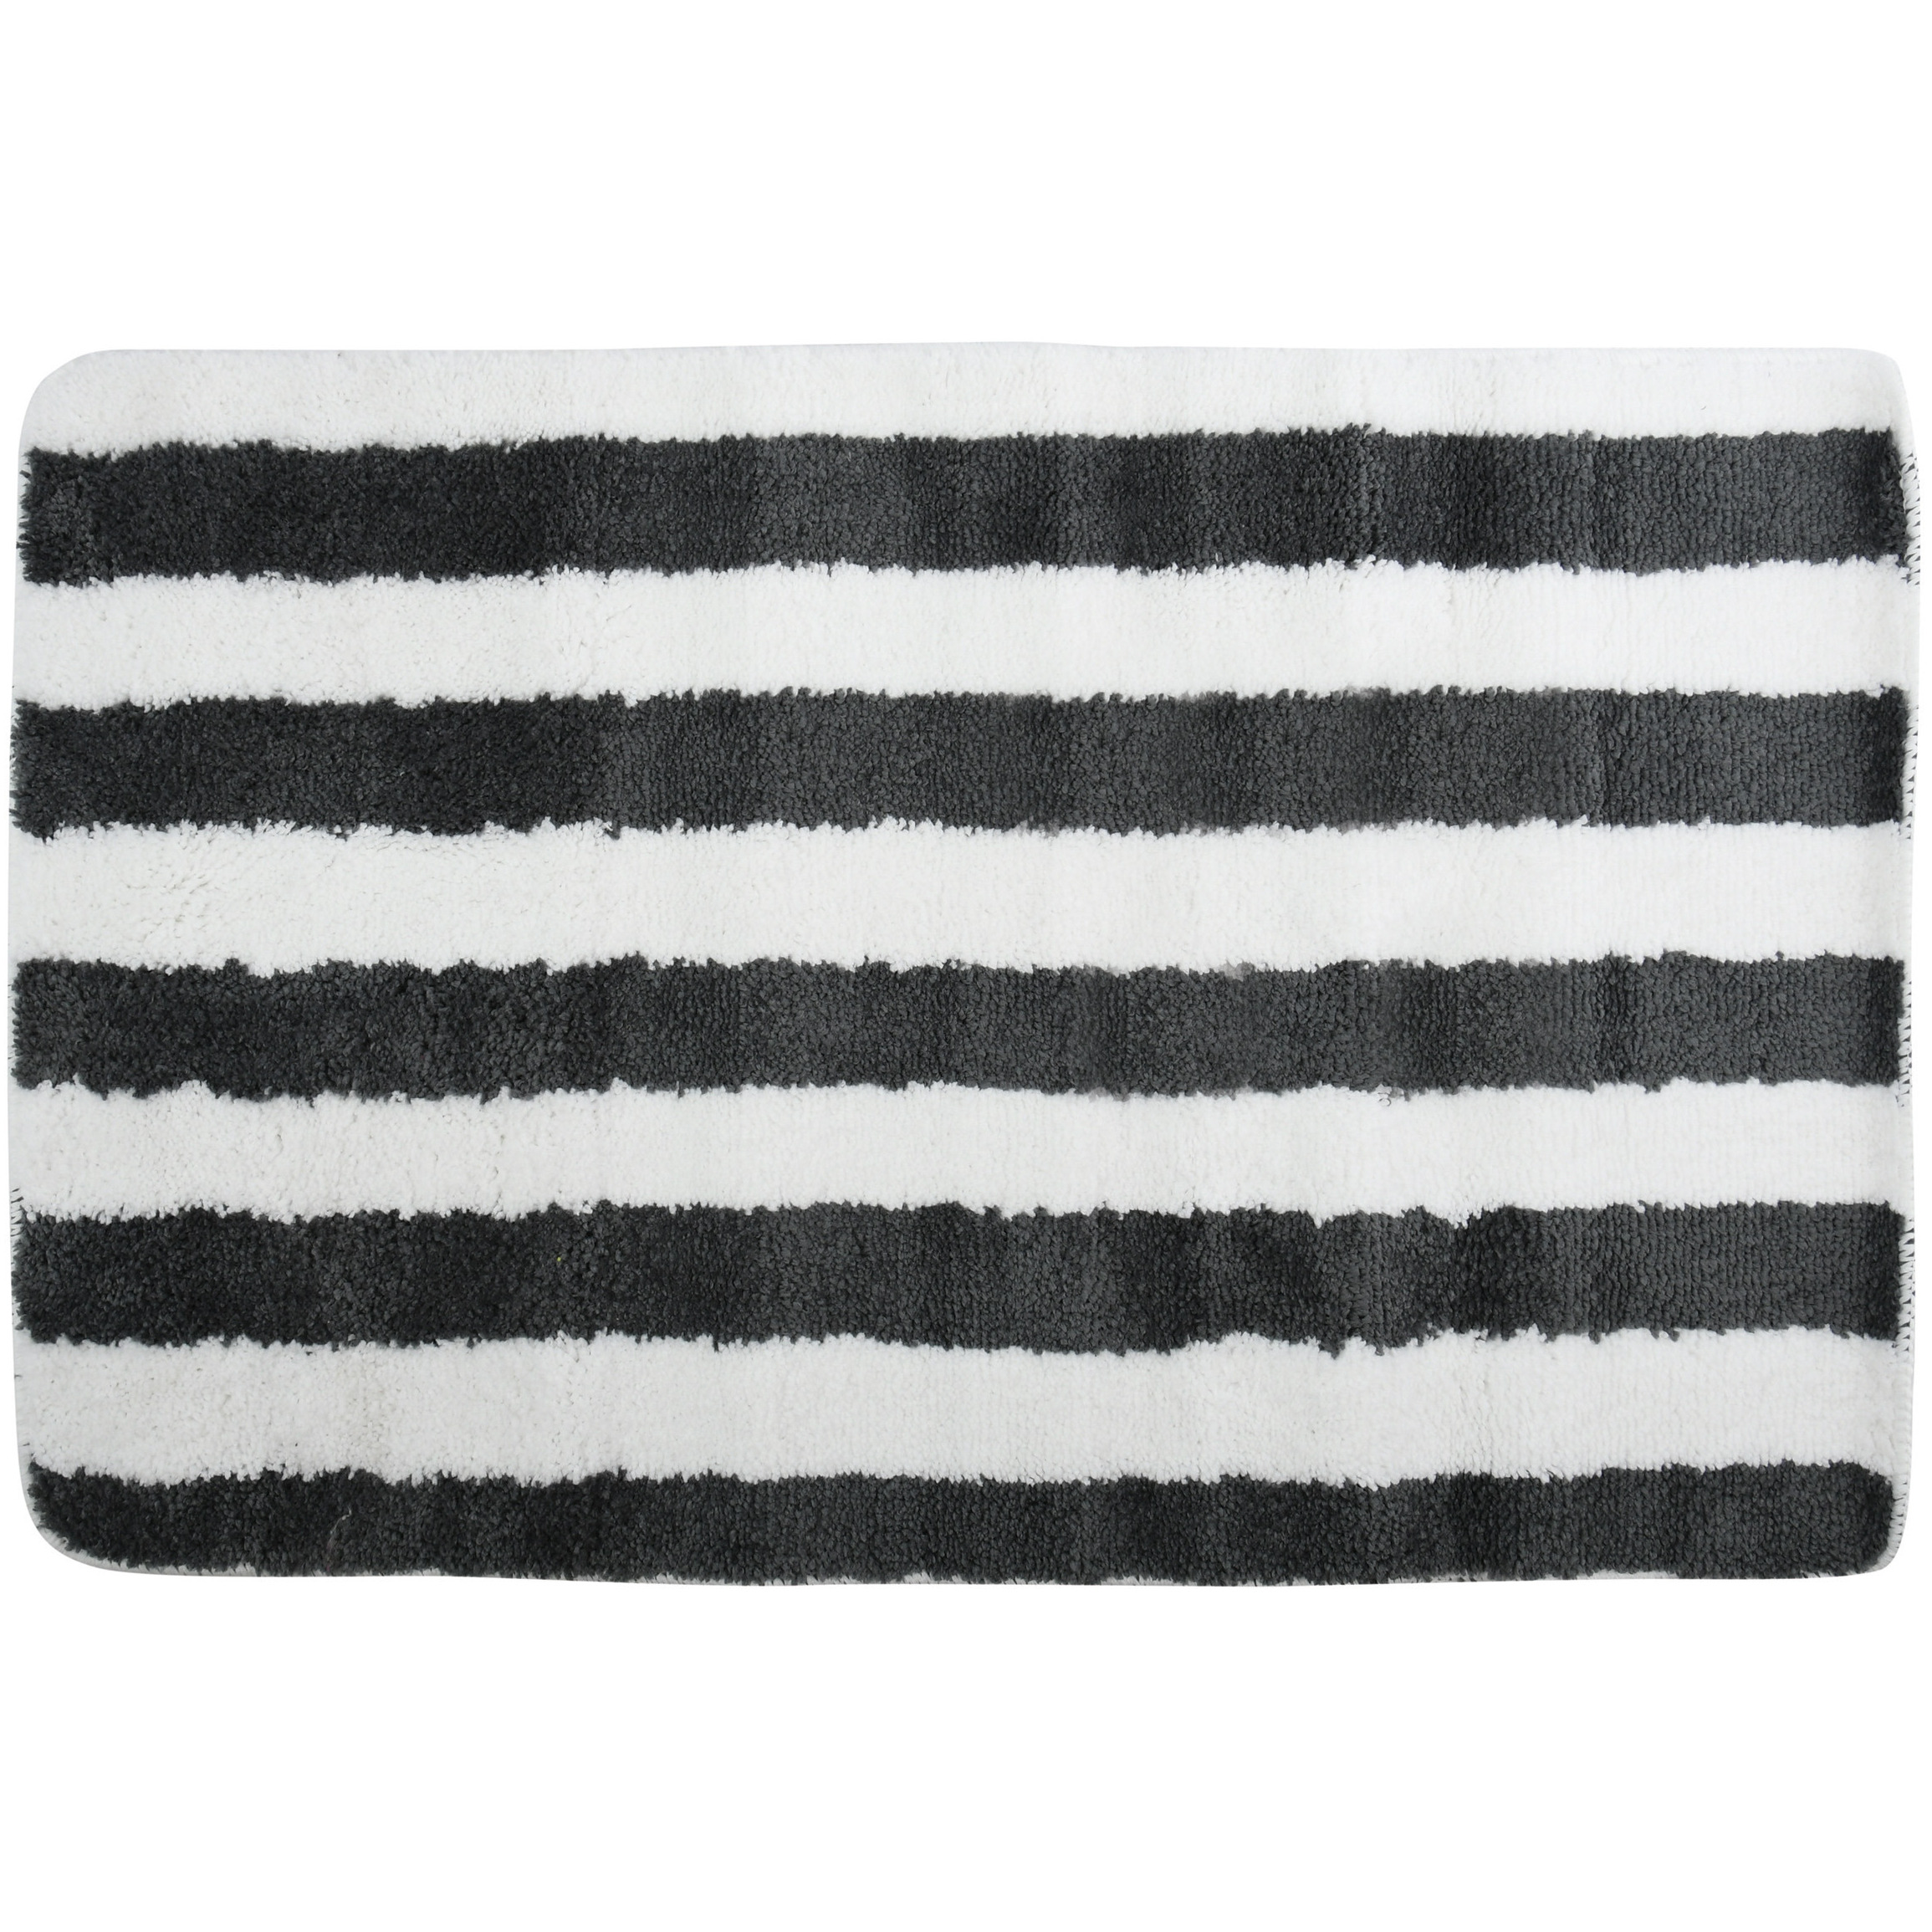 Badkamerkleedje-badmat tapijt kleedje voor op de vloer zwart-wit 50 x 80 cm